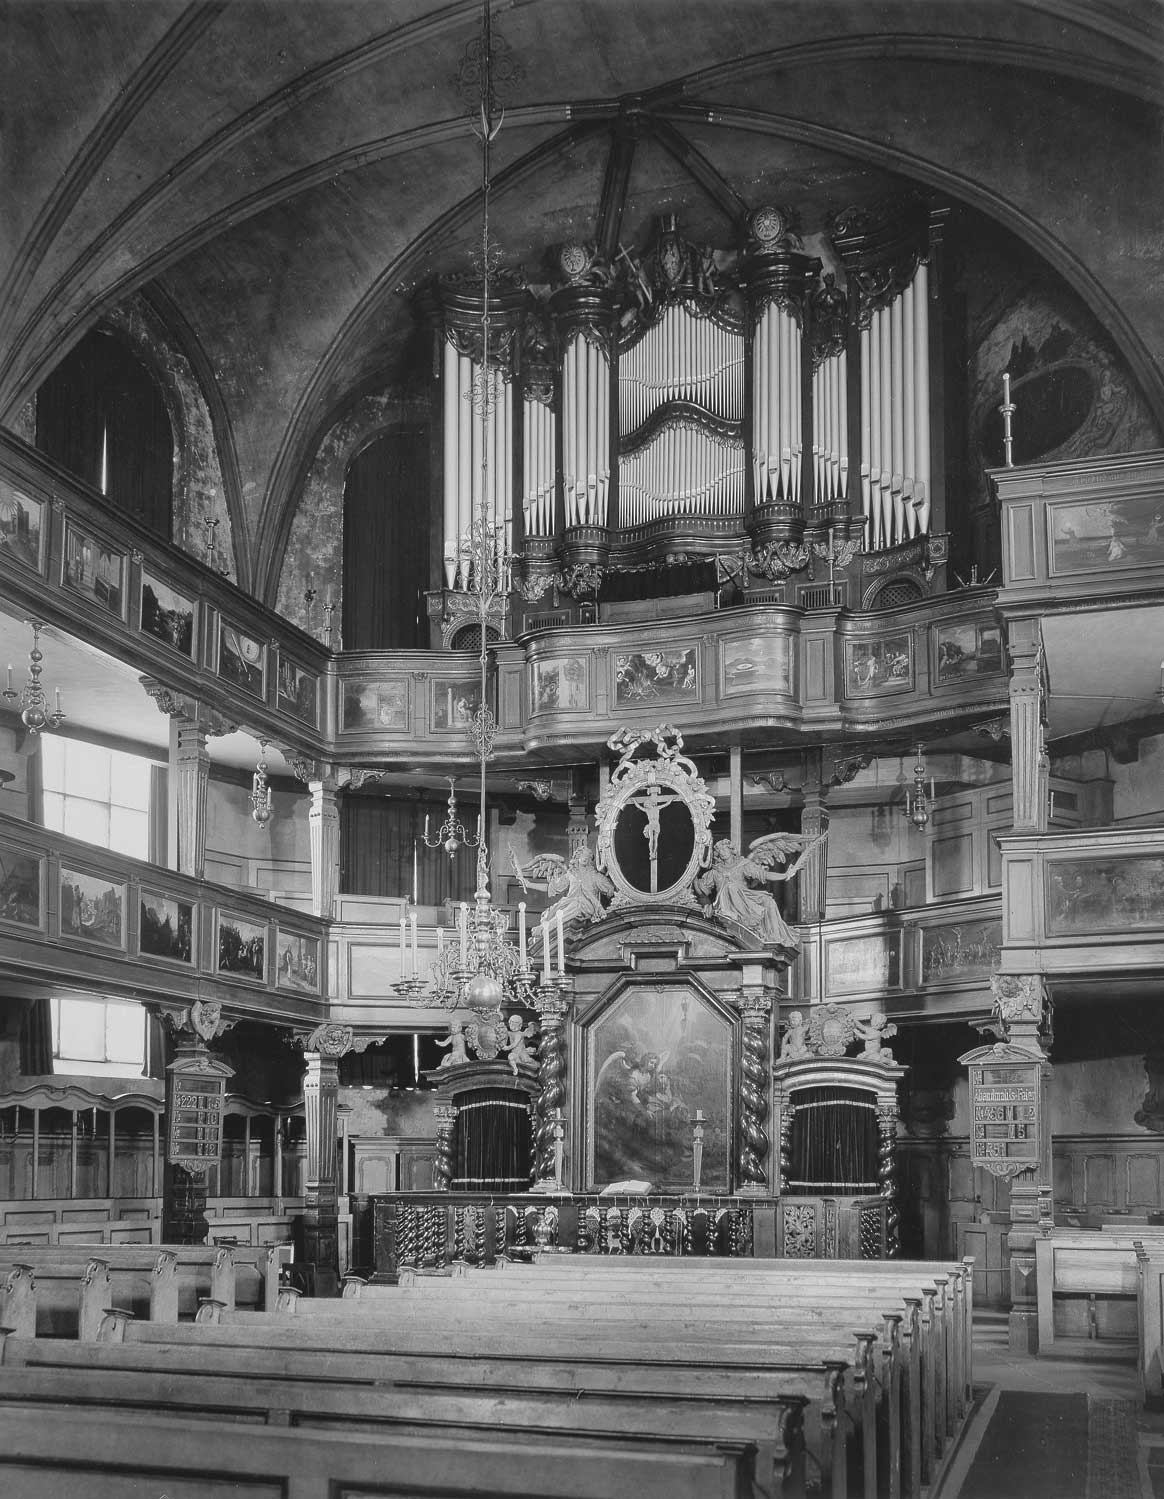 Steinmeier-Orgel von 1909 mit Prospekt von 1778 (1944 zerstört)